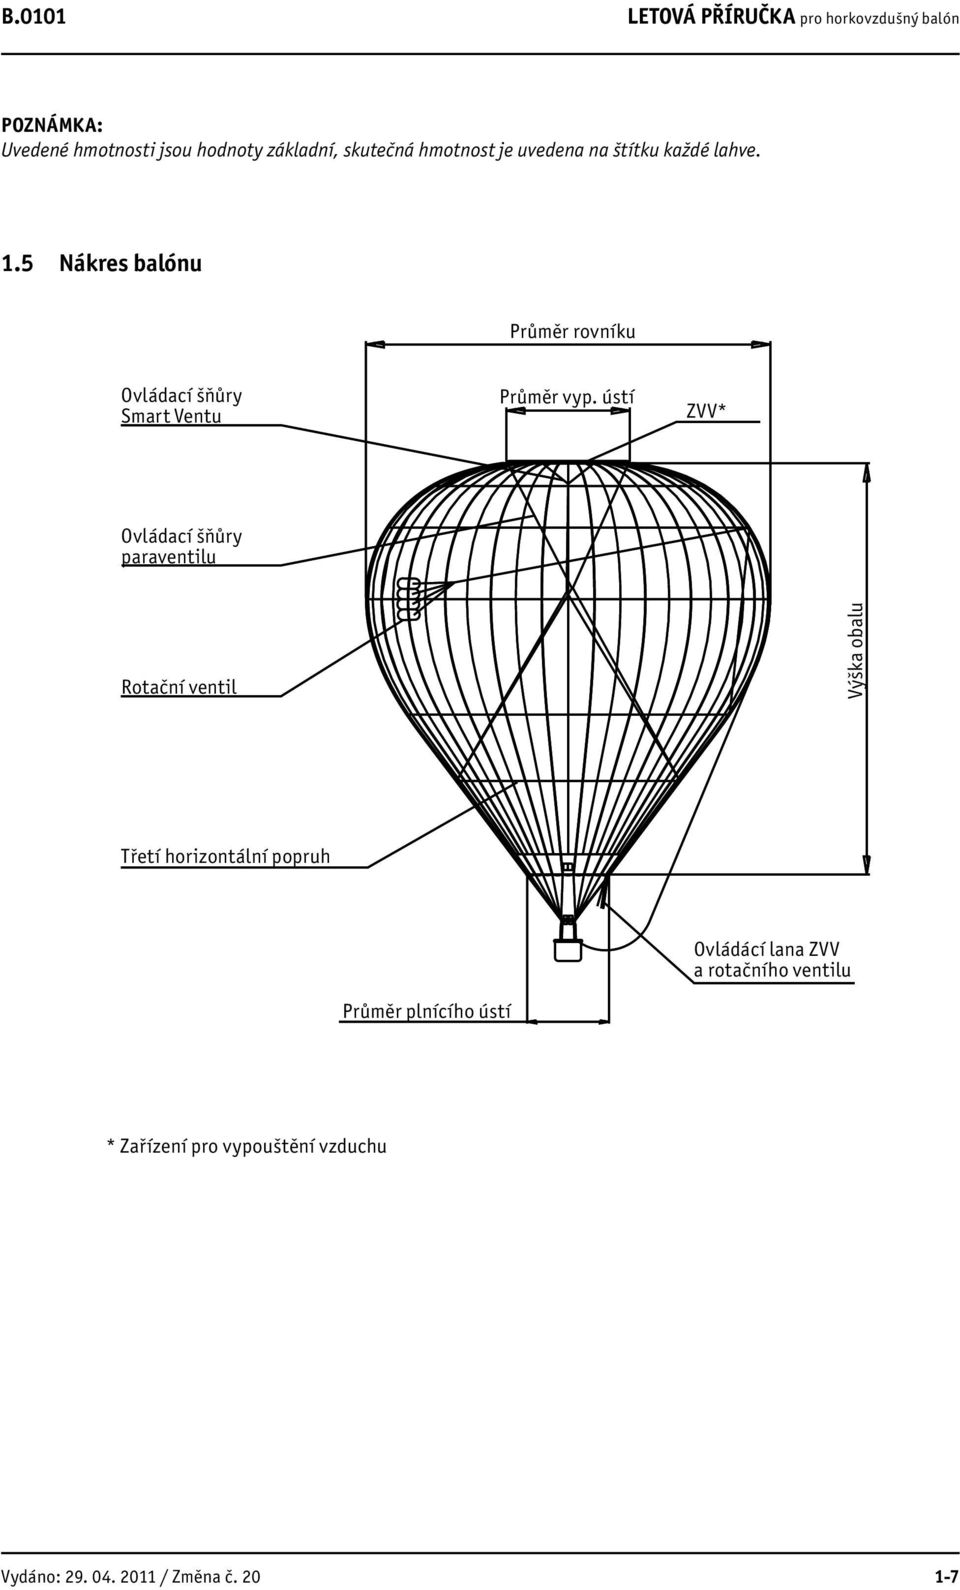 Letová př íručka pro horkovzdušný balón - PDF Stažení zdarma